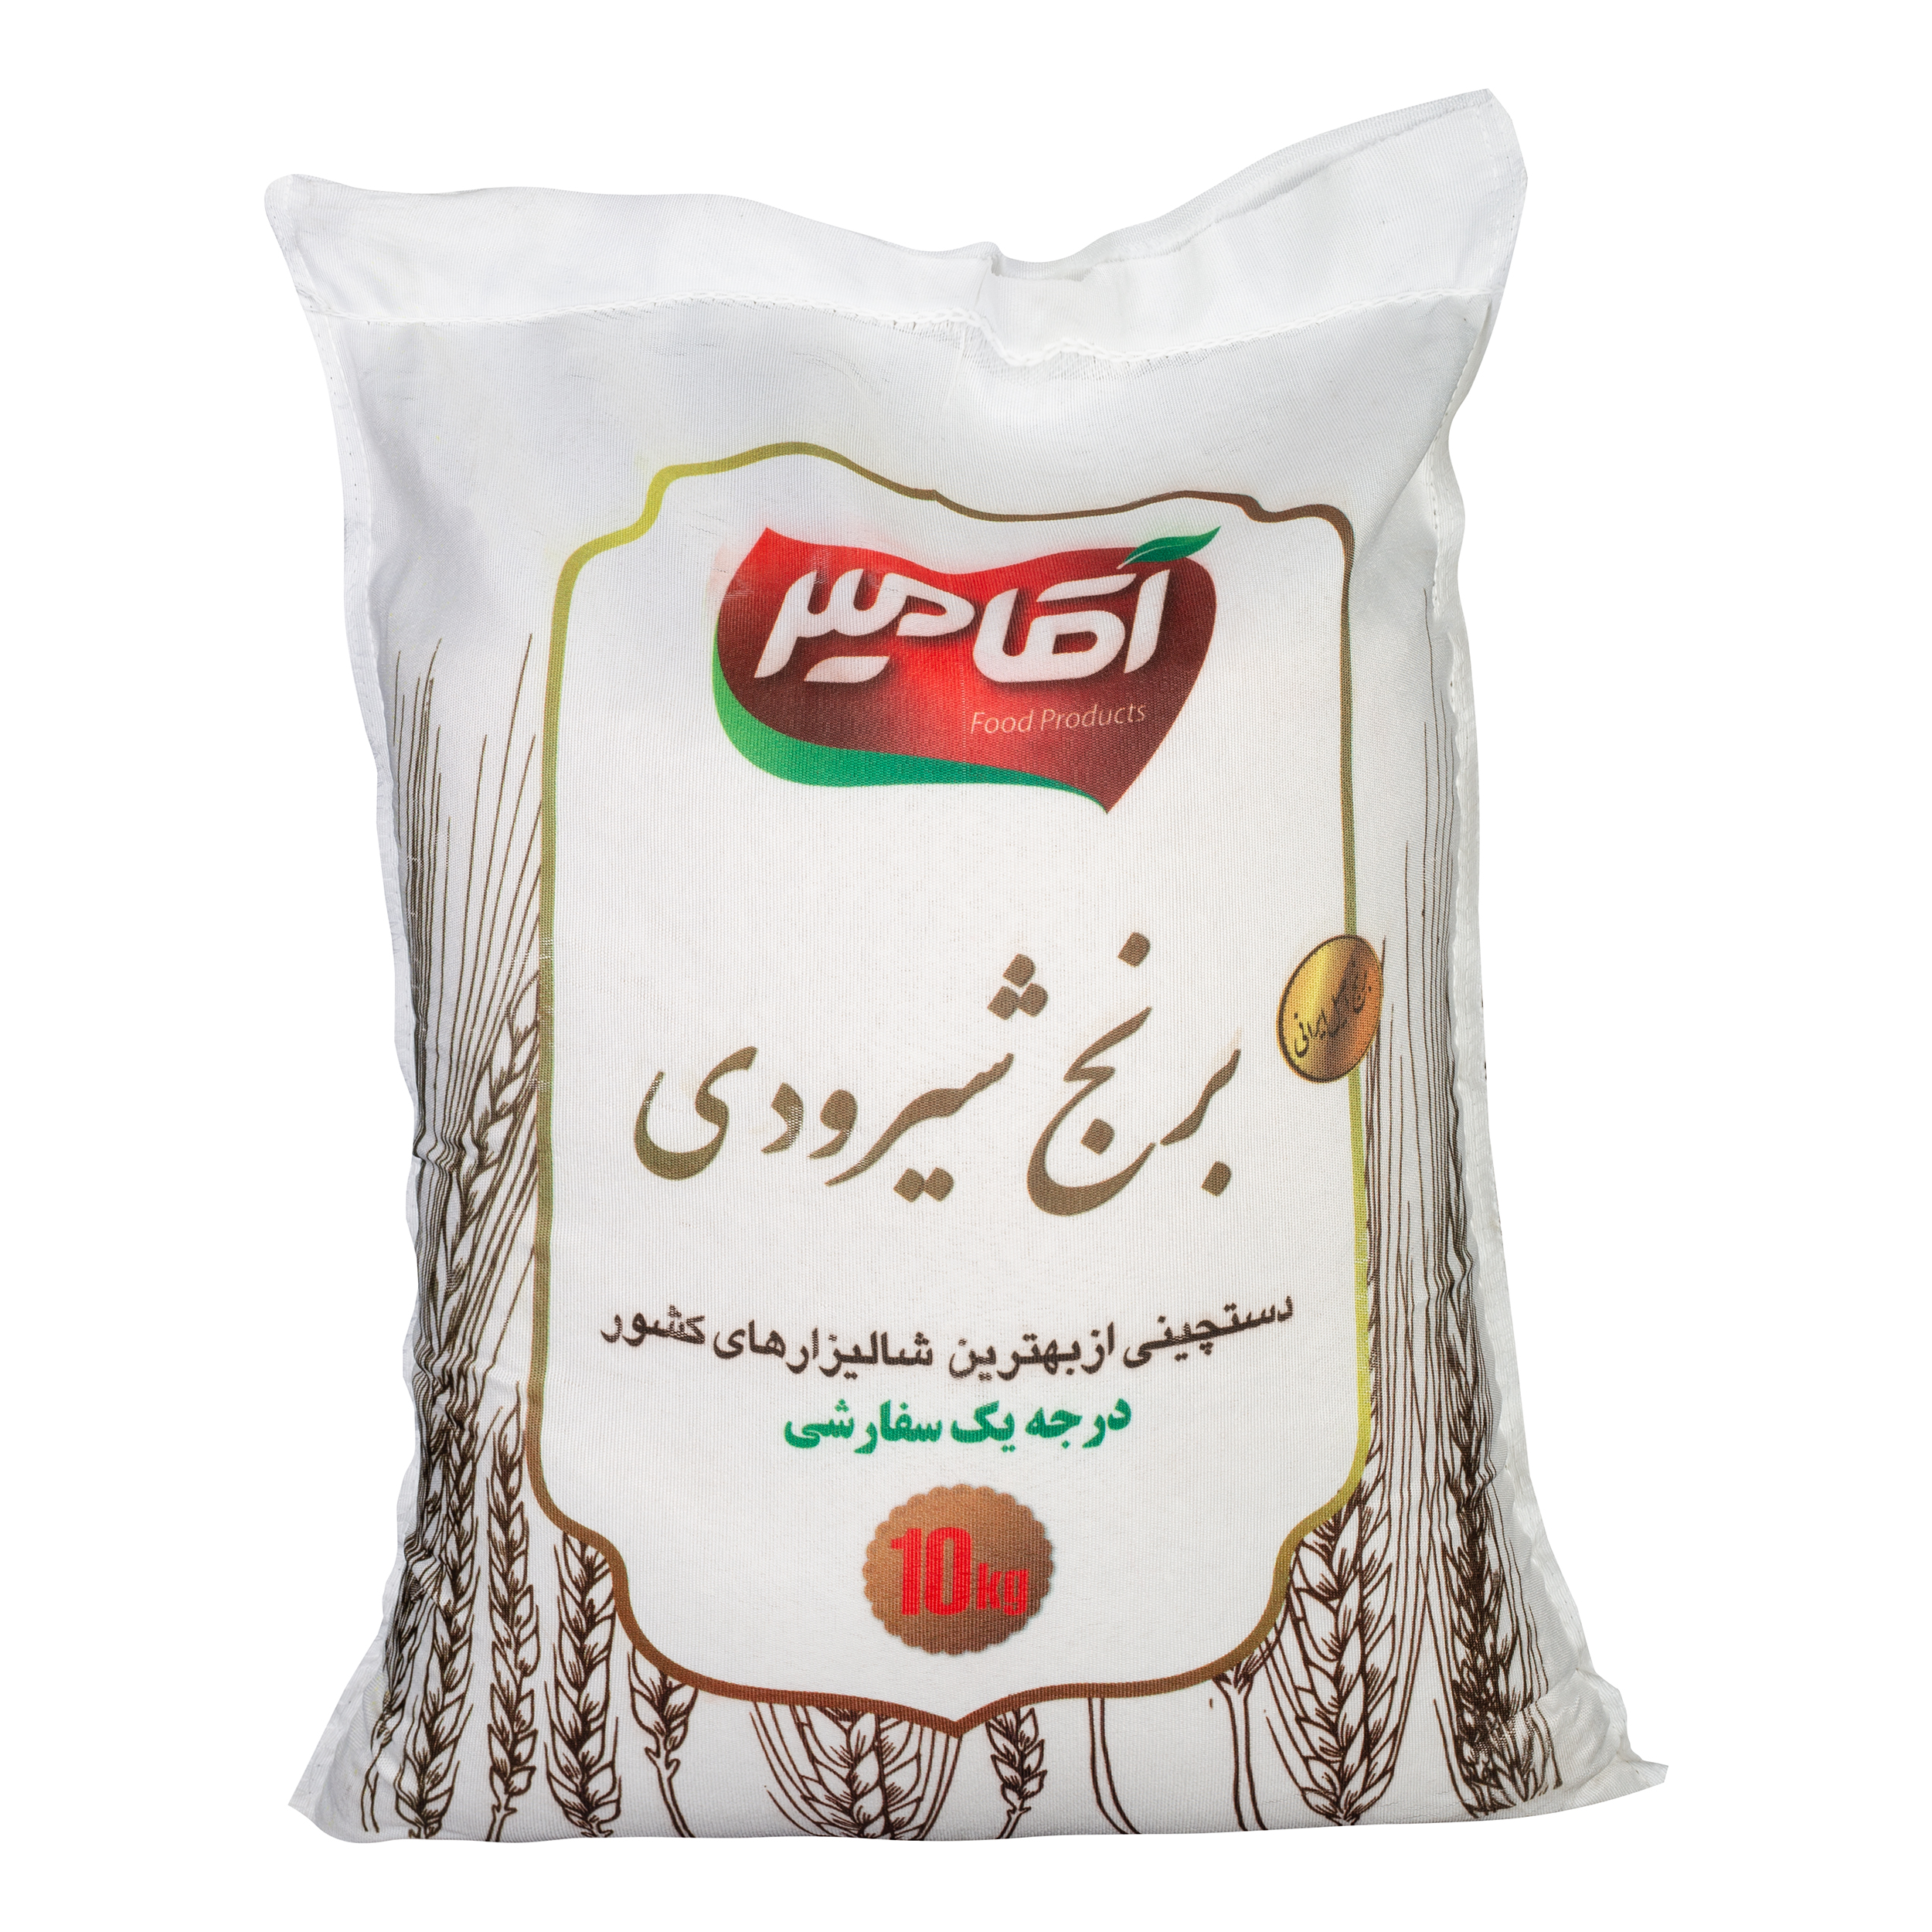 نکته خرید - قیمت روز برنج شیرودی آقامیر - 10 کیلوگرم خرید